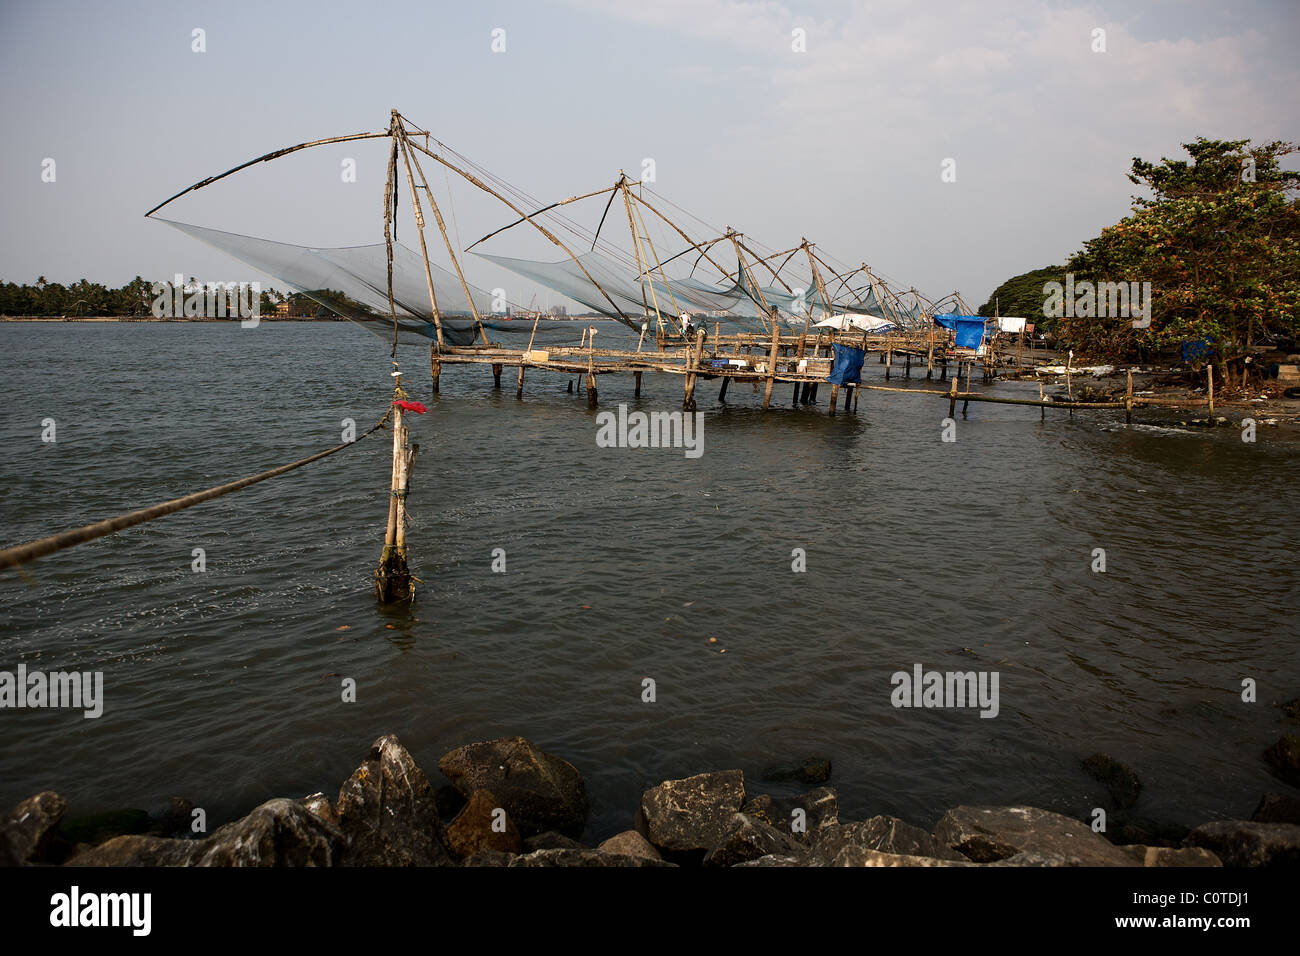 Traditionelle chinesische freitragend Fischernetz, Fort Cochin, Kerala, Indien. 15 Sekunden Exposition Stockfoto